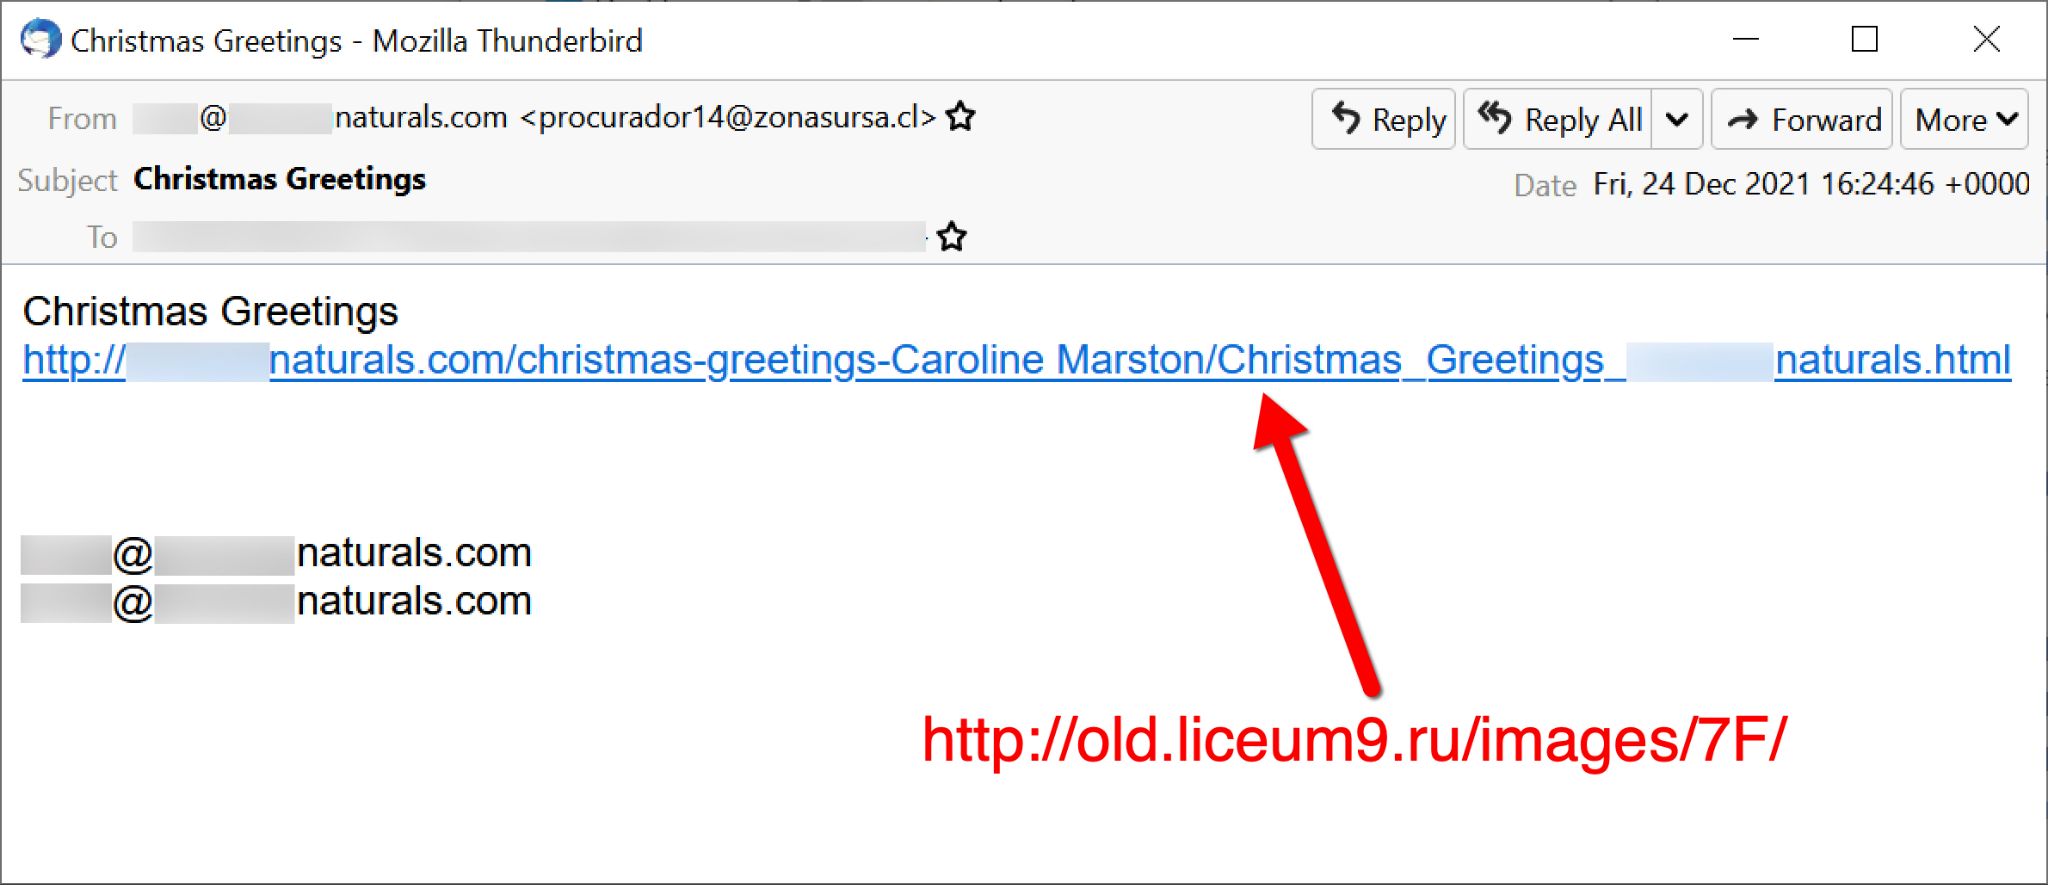 12月24日に観測されたEmotetをプッシュするメール。クリスマスをテーマにしていた。赤い矢印は悪意のあるリンクを示し、実際のリンク先を赤で表示している。 